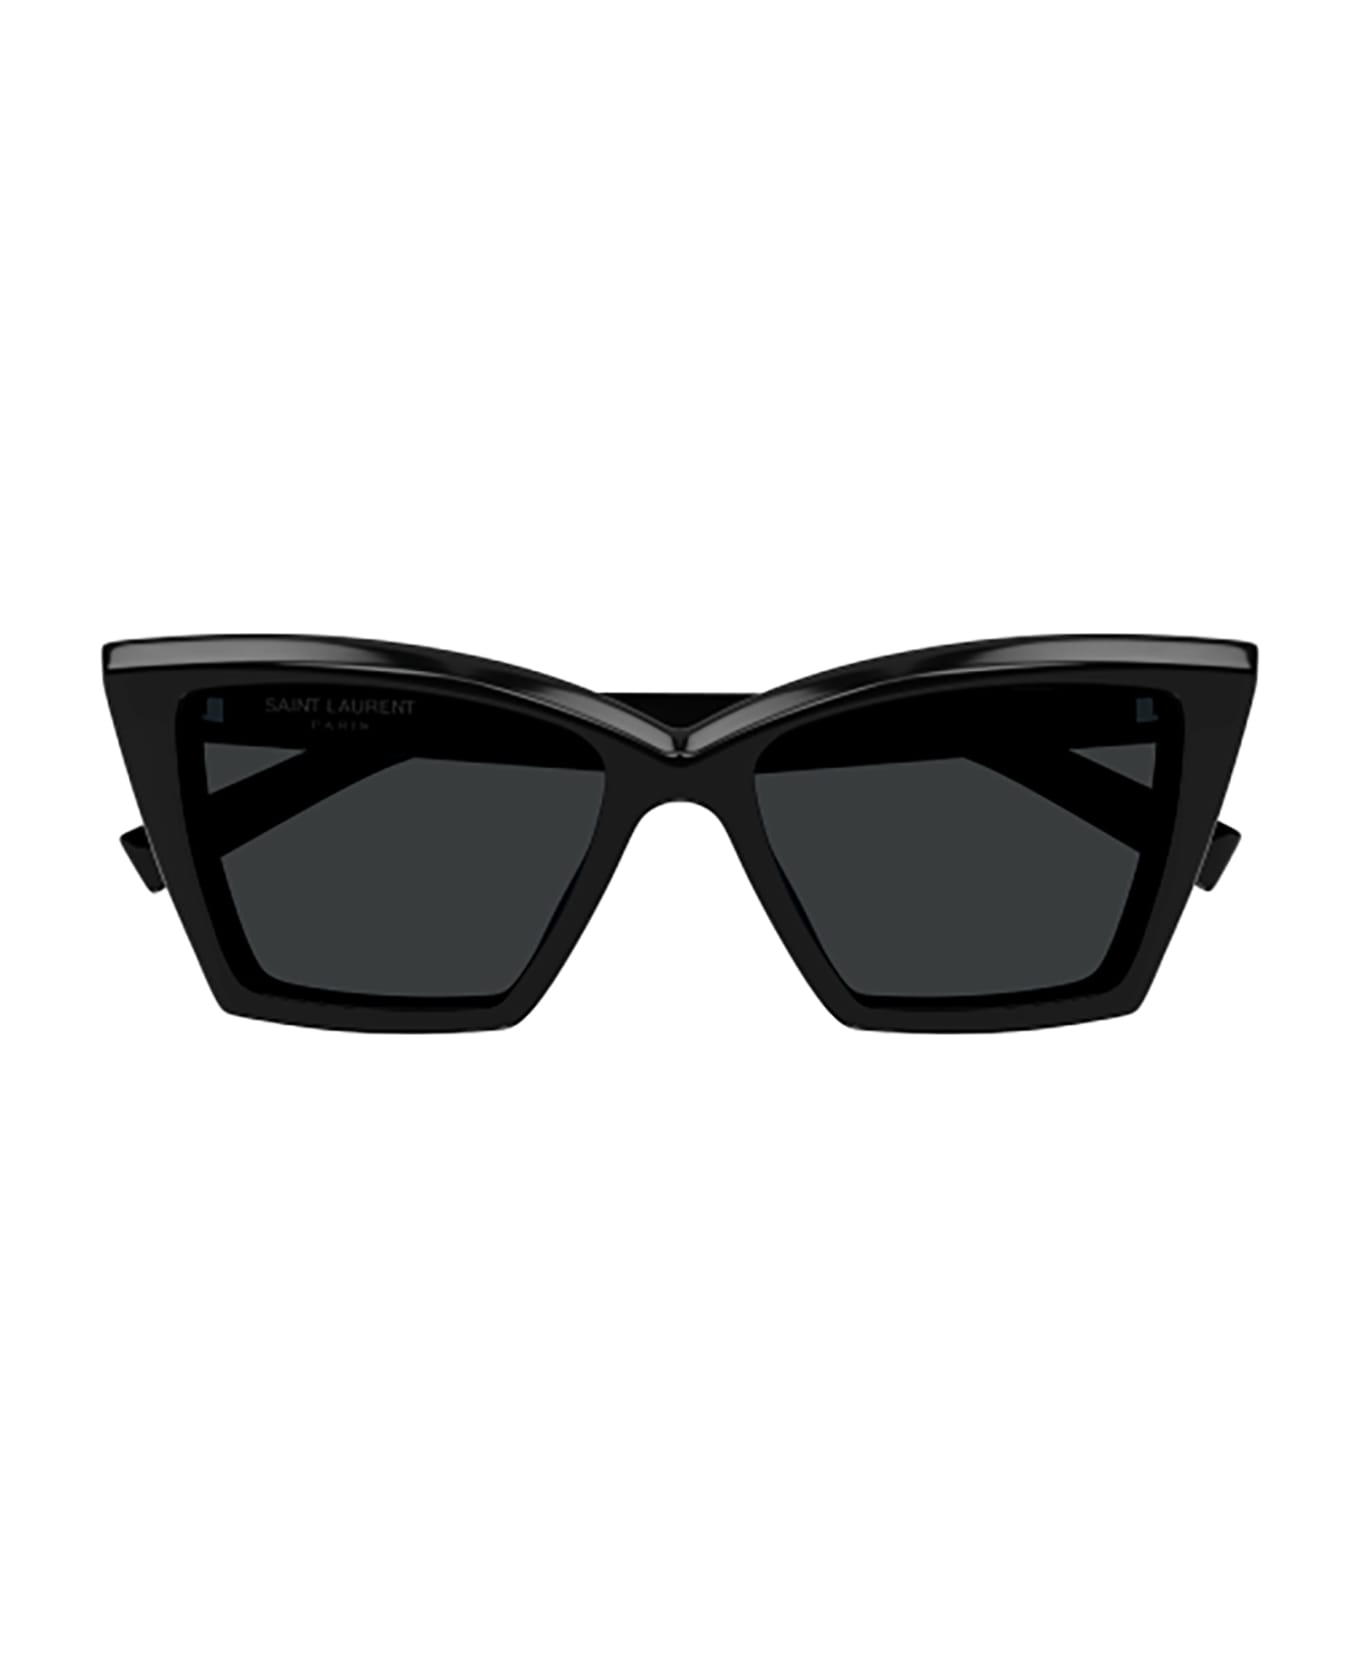 Saint Laurent Eyewear Sl 657 Sunglasses - 001 black black black